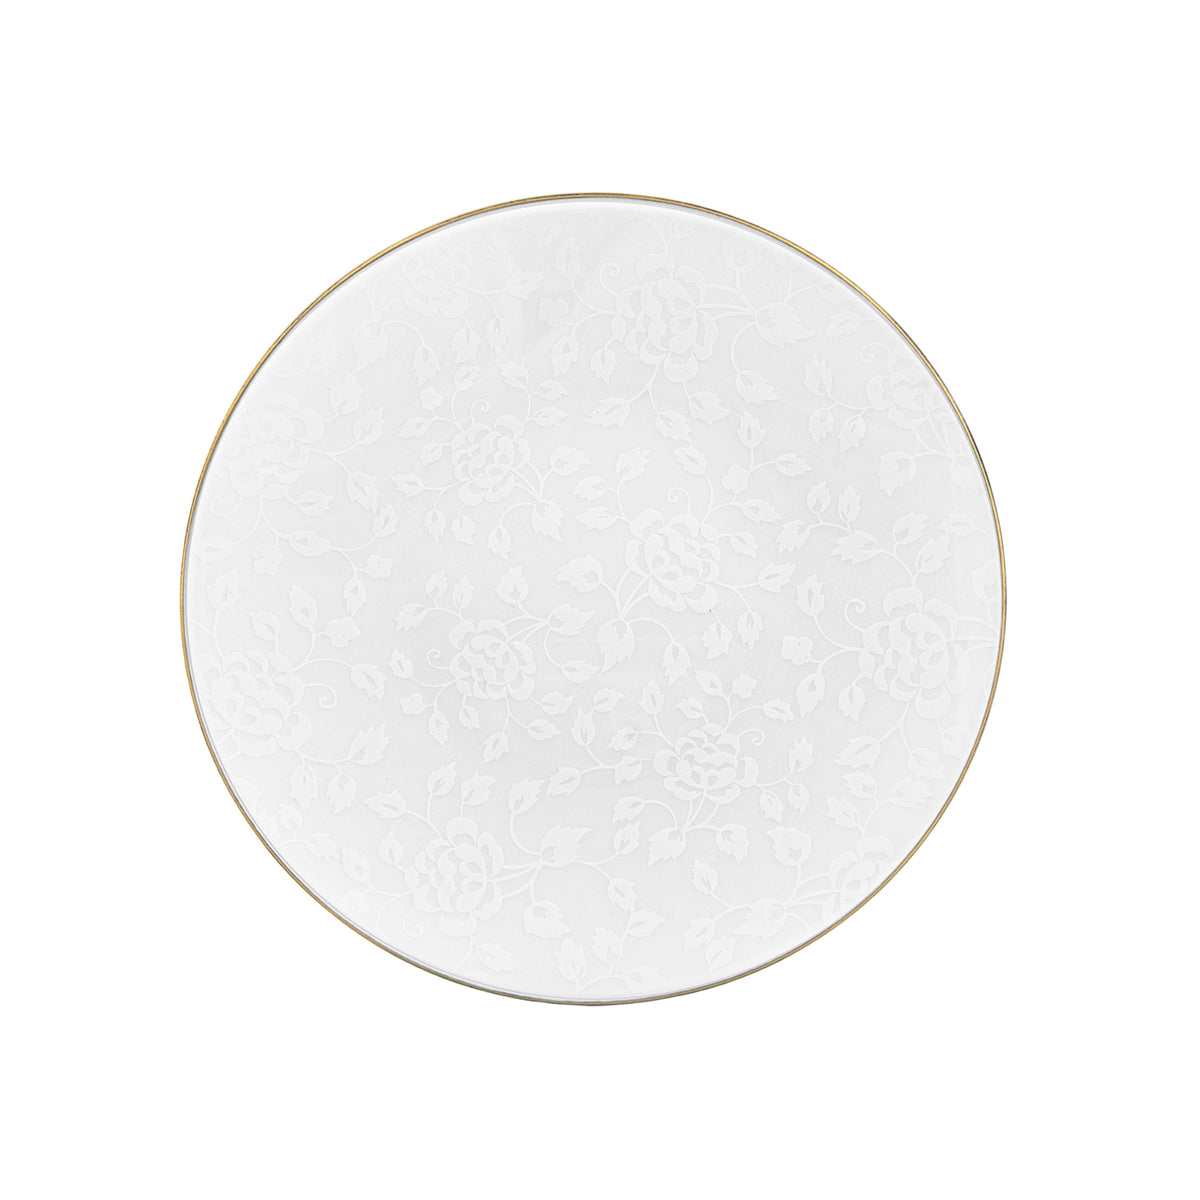 CHARDONS blanc sur blanc filet Or - Assiette plate